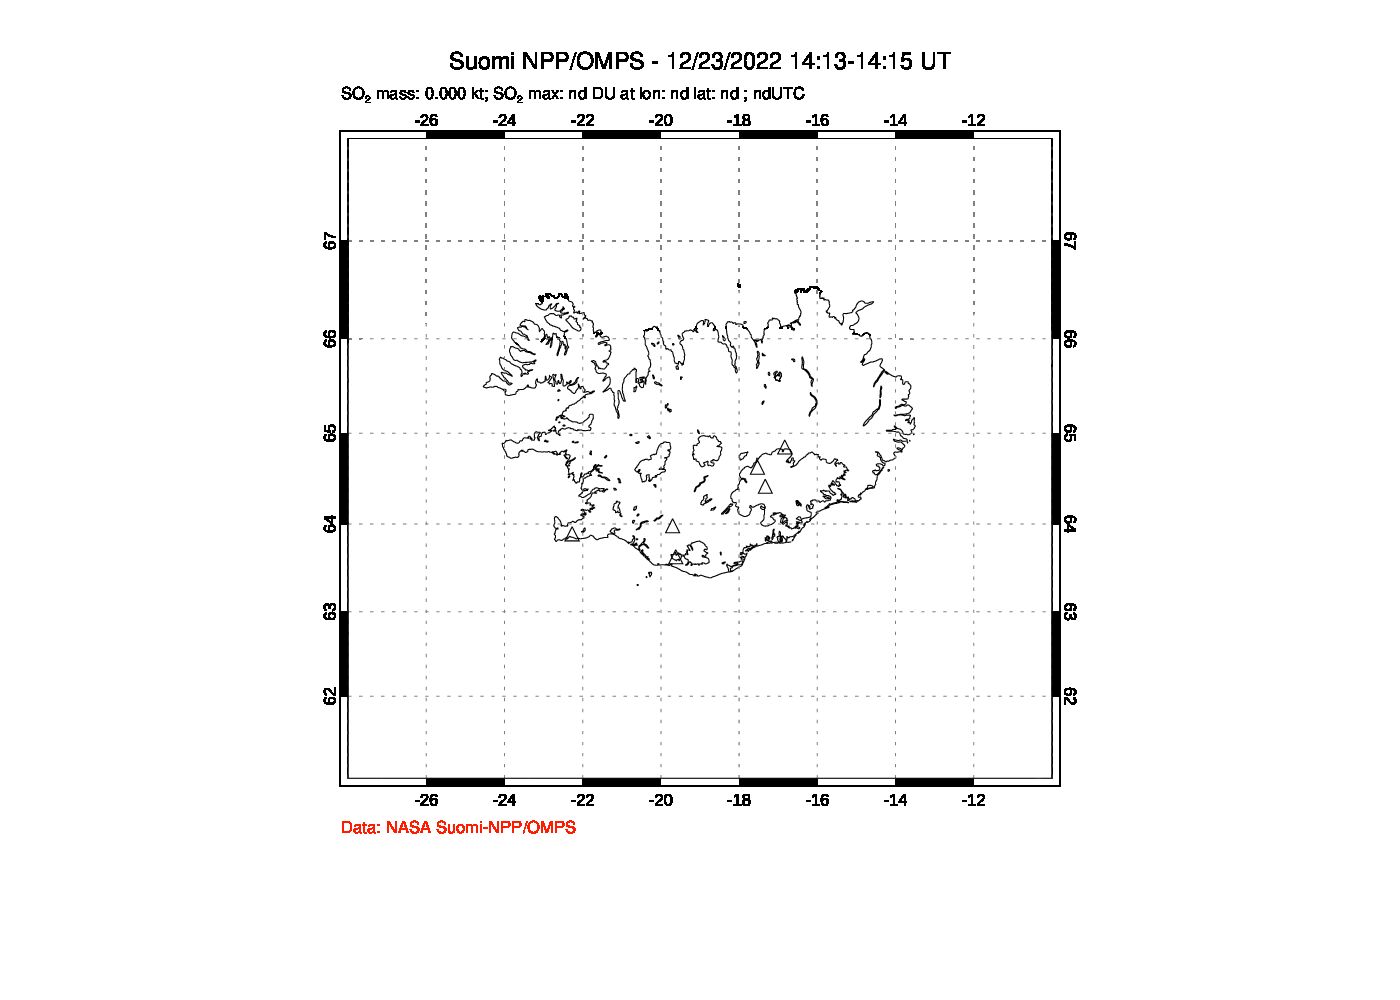 A sulfur dioxide image over Iceland on Dec 23, 2022.